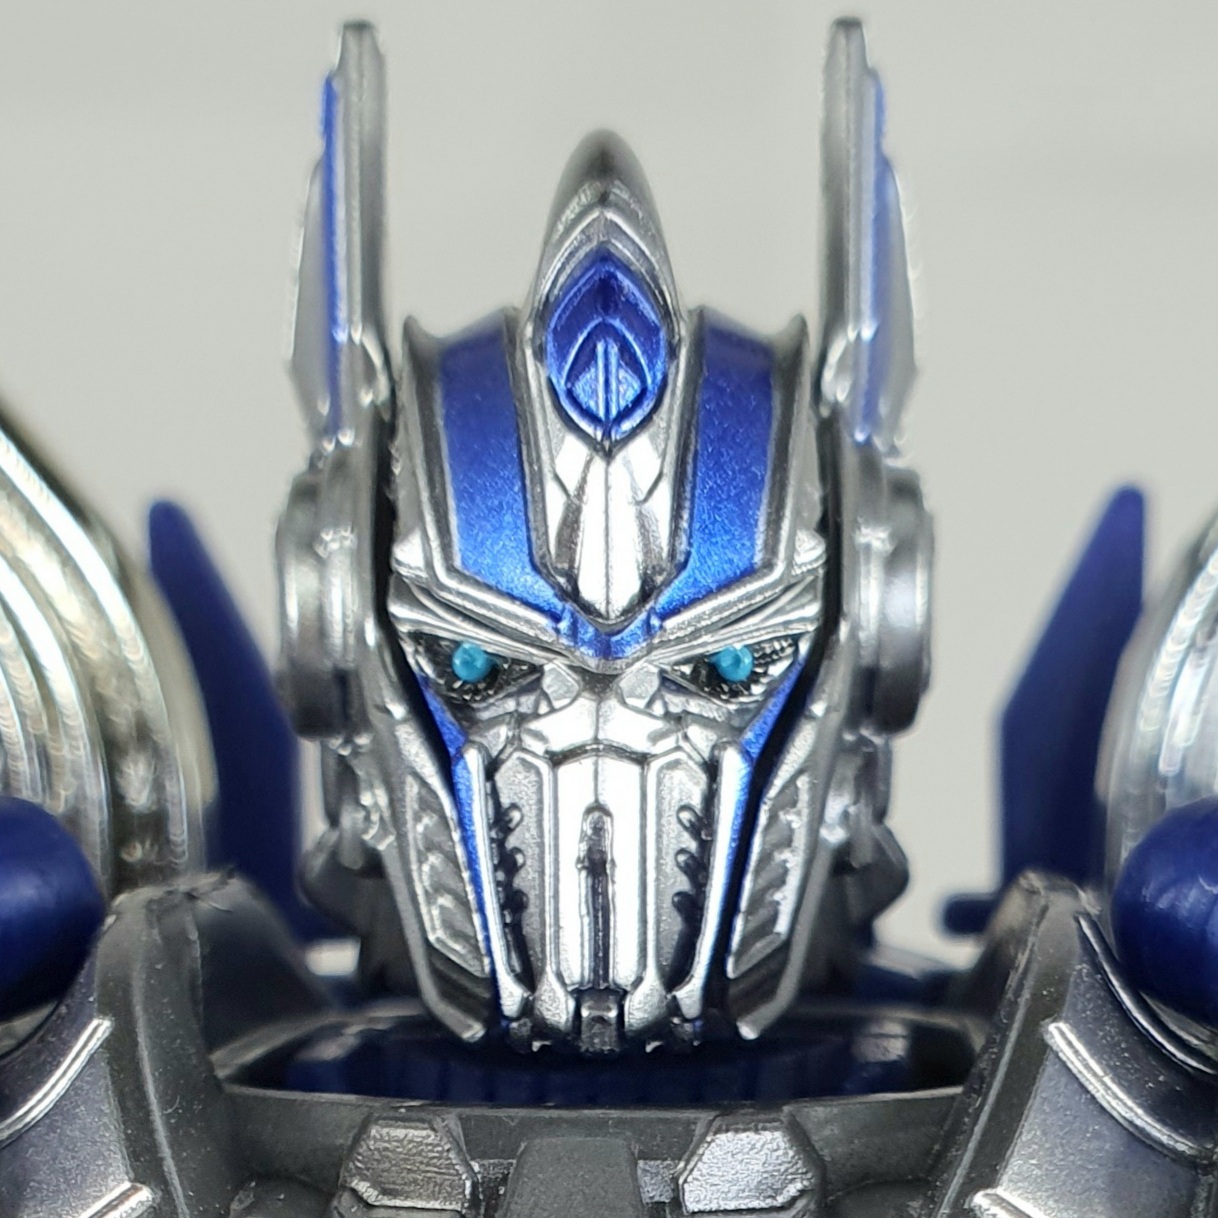 Optimus Prime será lançado na forma de caneta - TecMundo